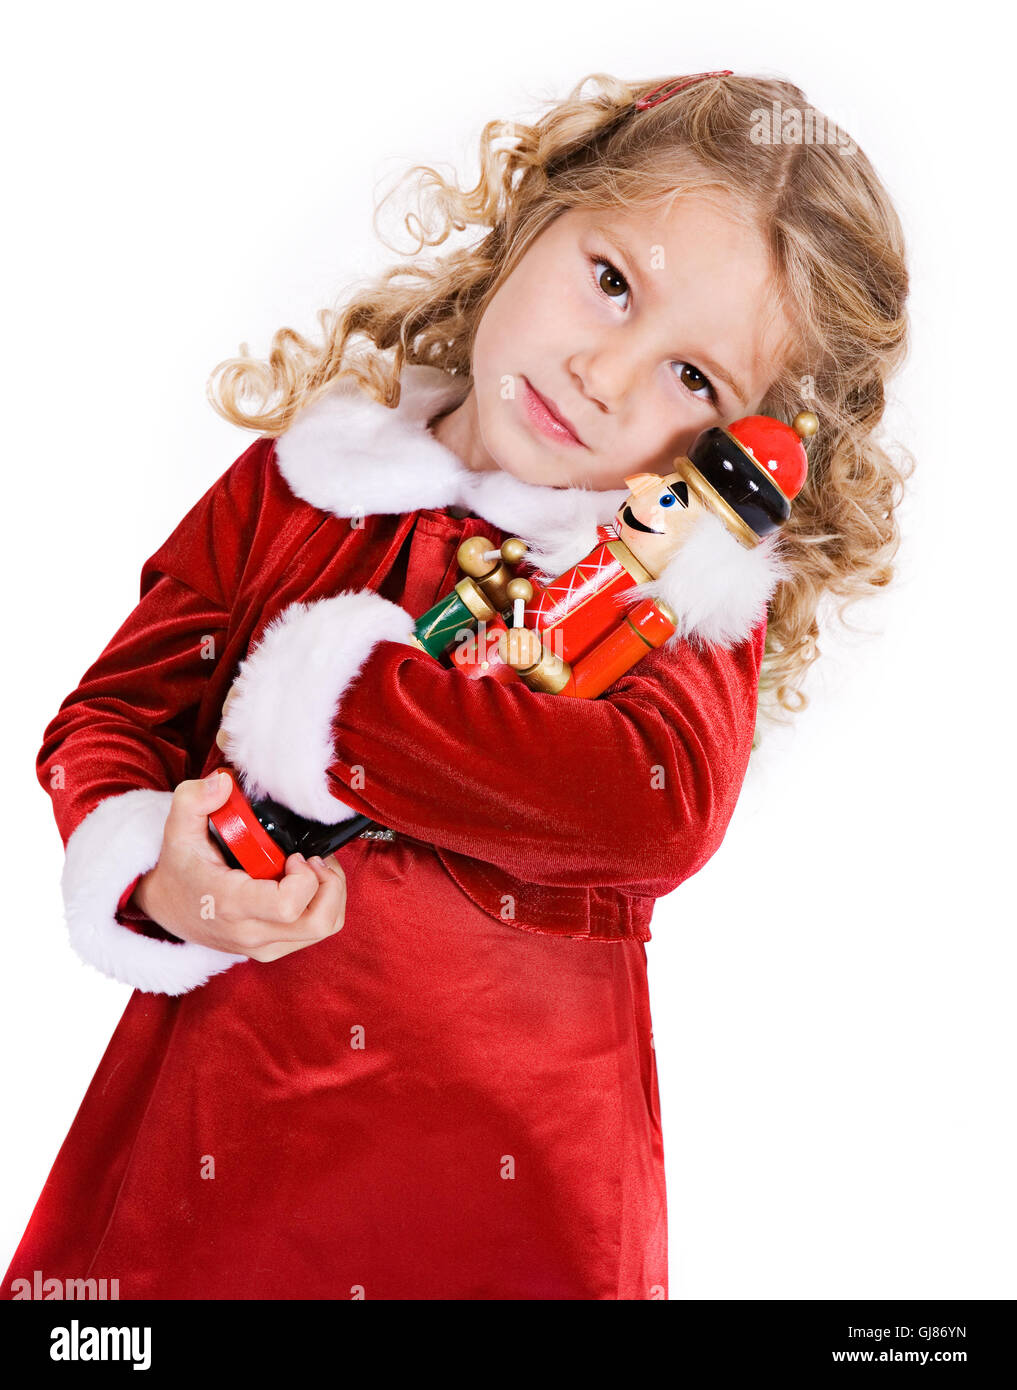 Little girl in red velvet holiday dress celebrates Christmas, isolated on white. Stock Photo